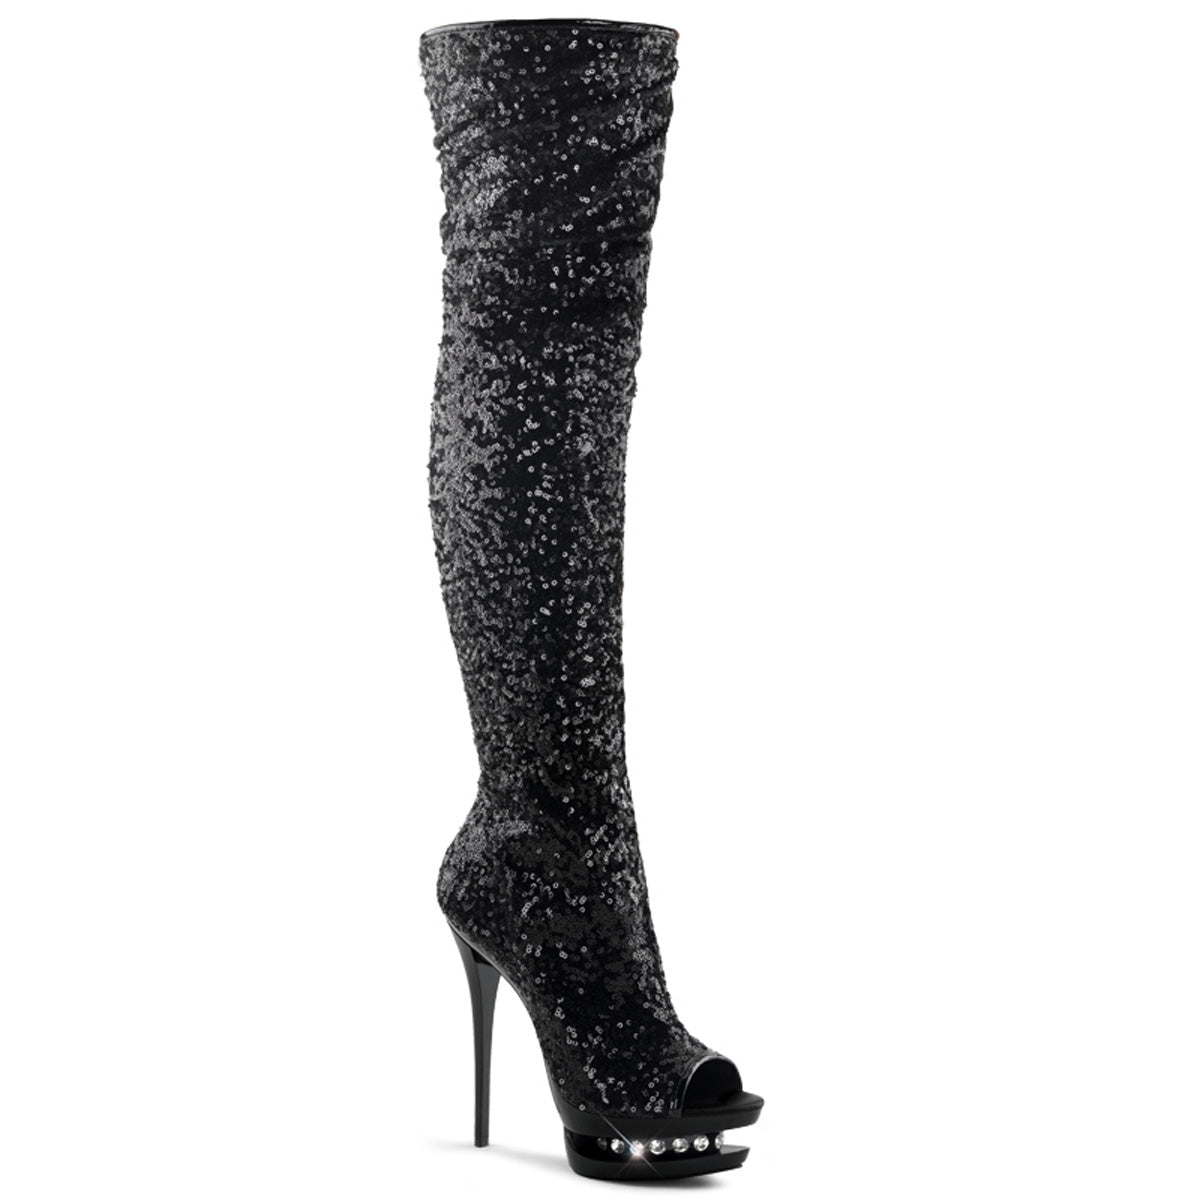 BLONDIE-R-3011 Sexy 6 Inch Black Sequins Stripper Thigh High Boots